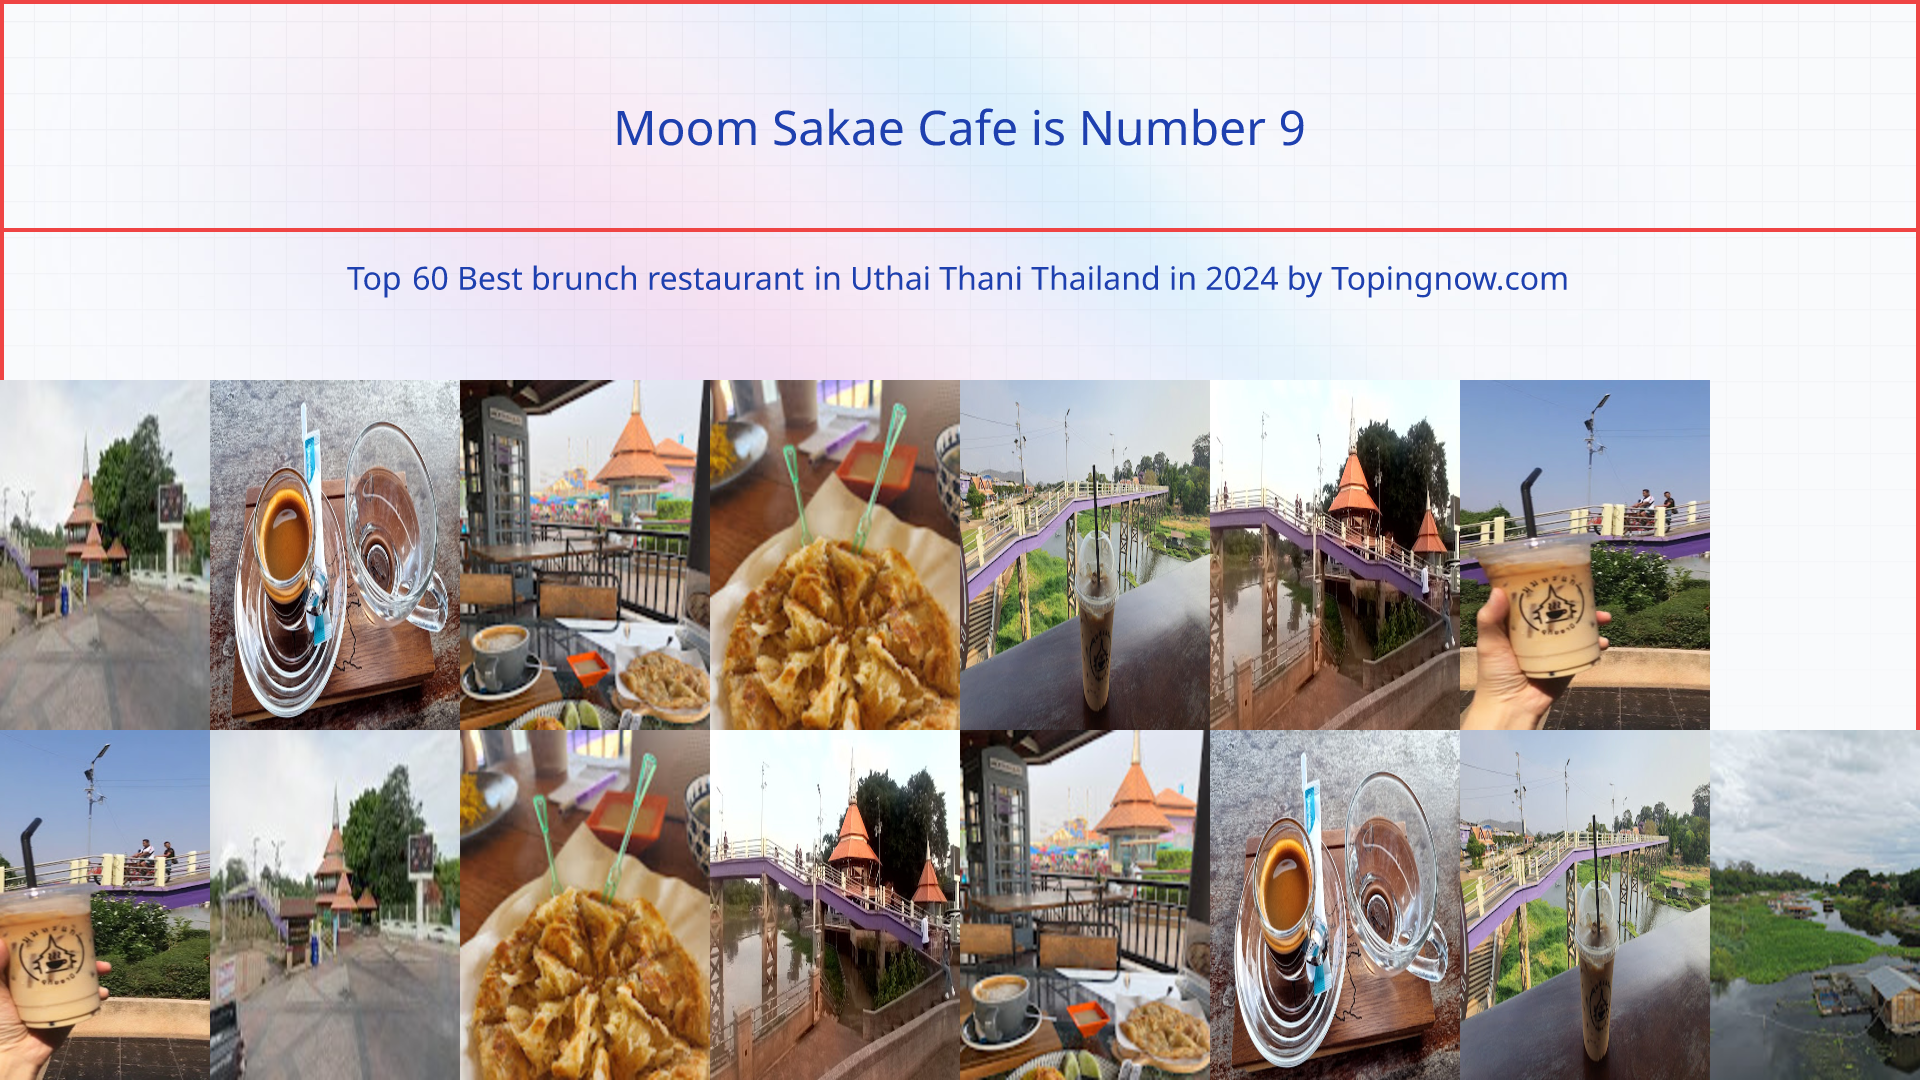 Moom Sakae Cafe: Top 60 Best brunch restaurant in Uthai Thani Thailand in 2024